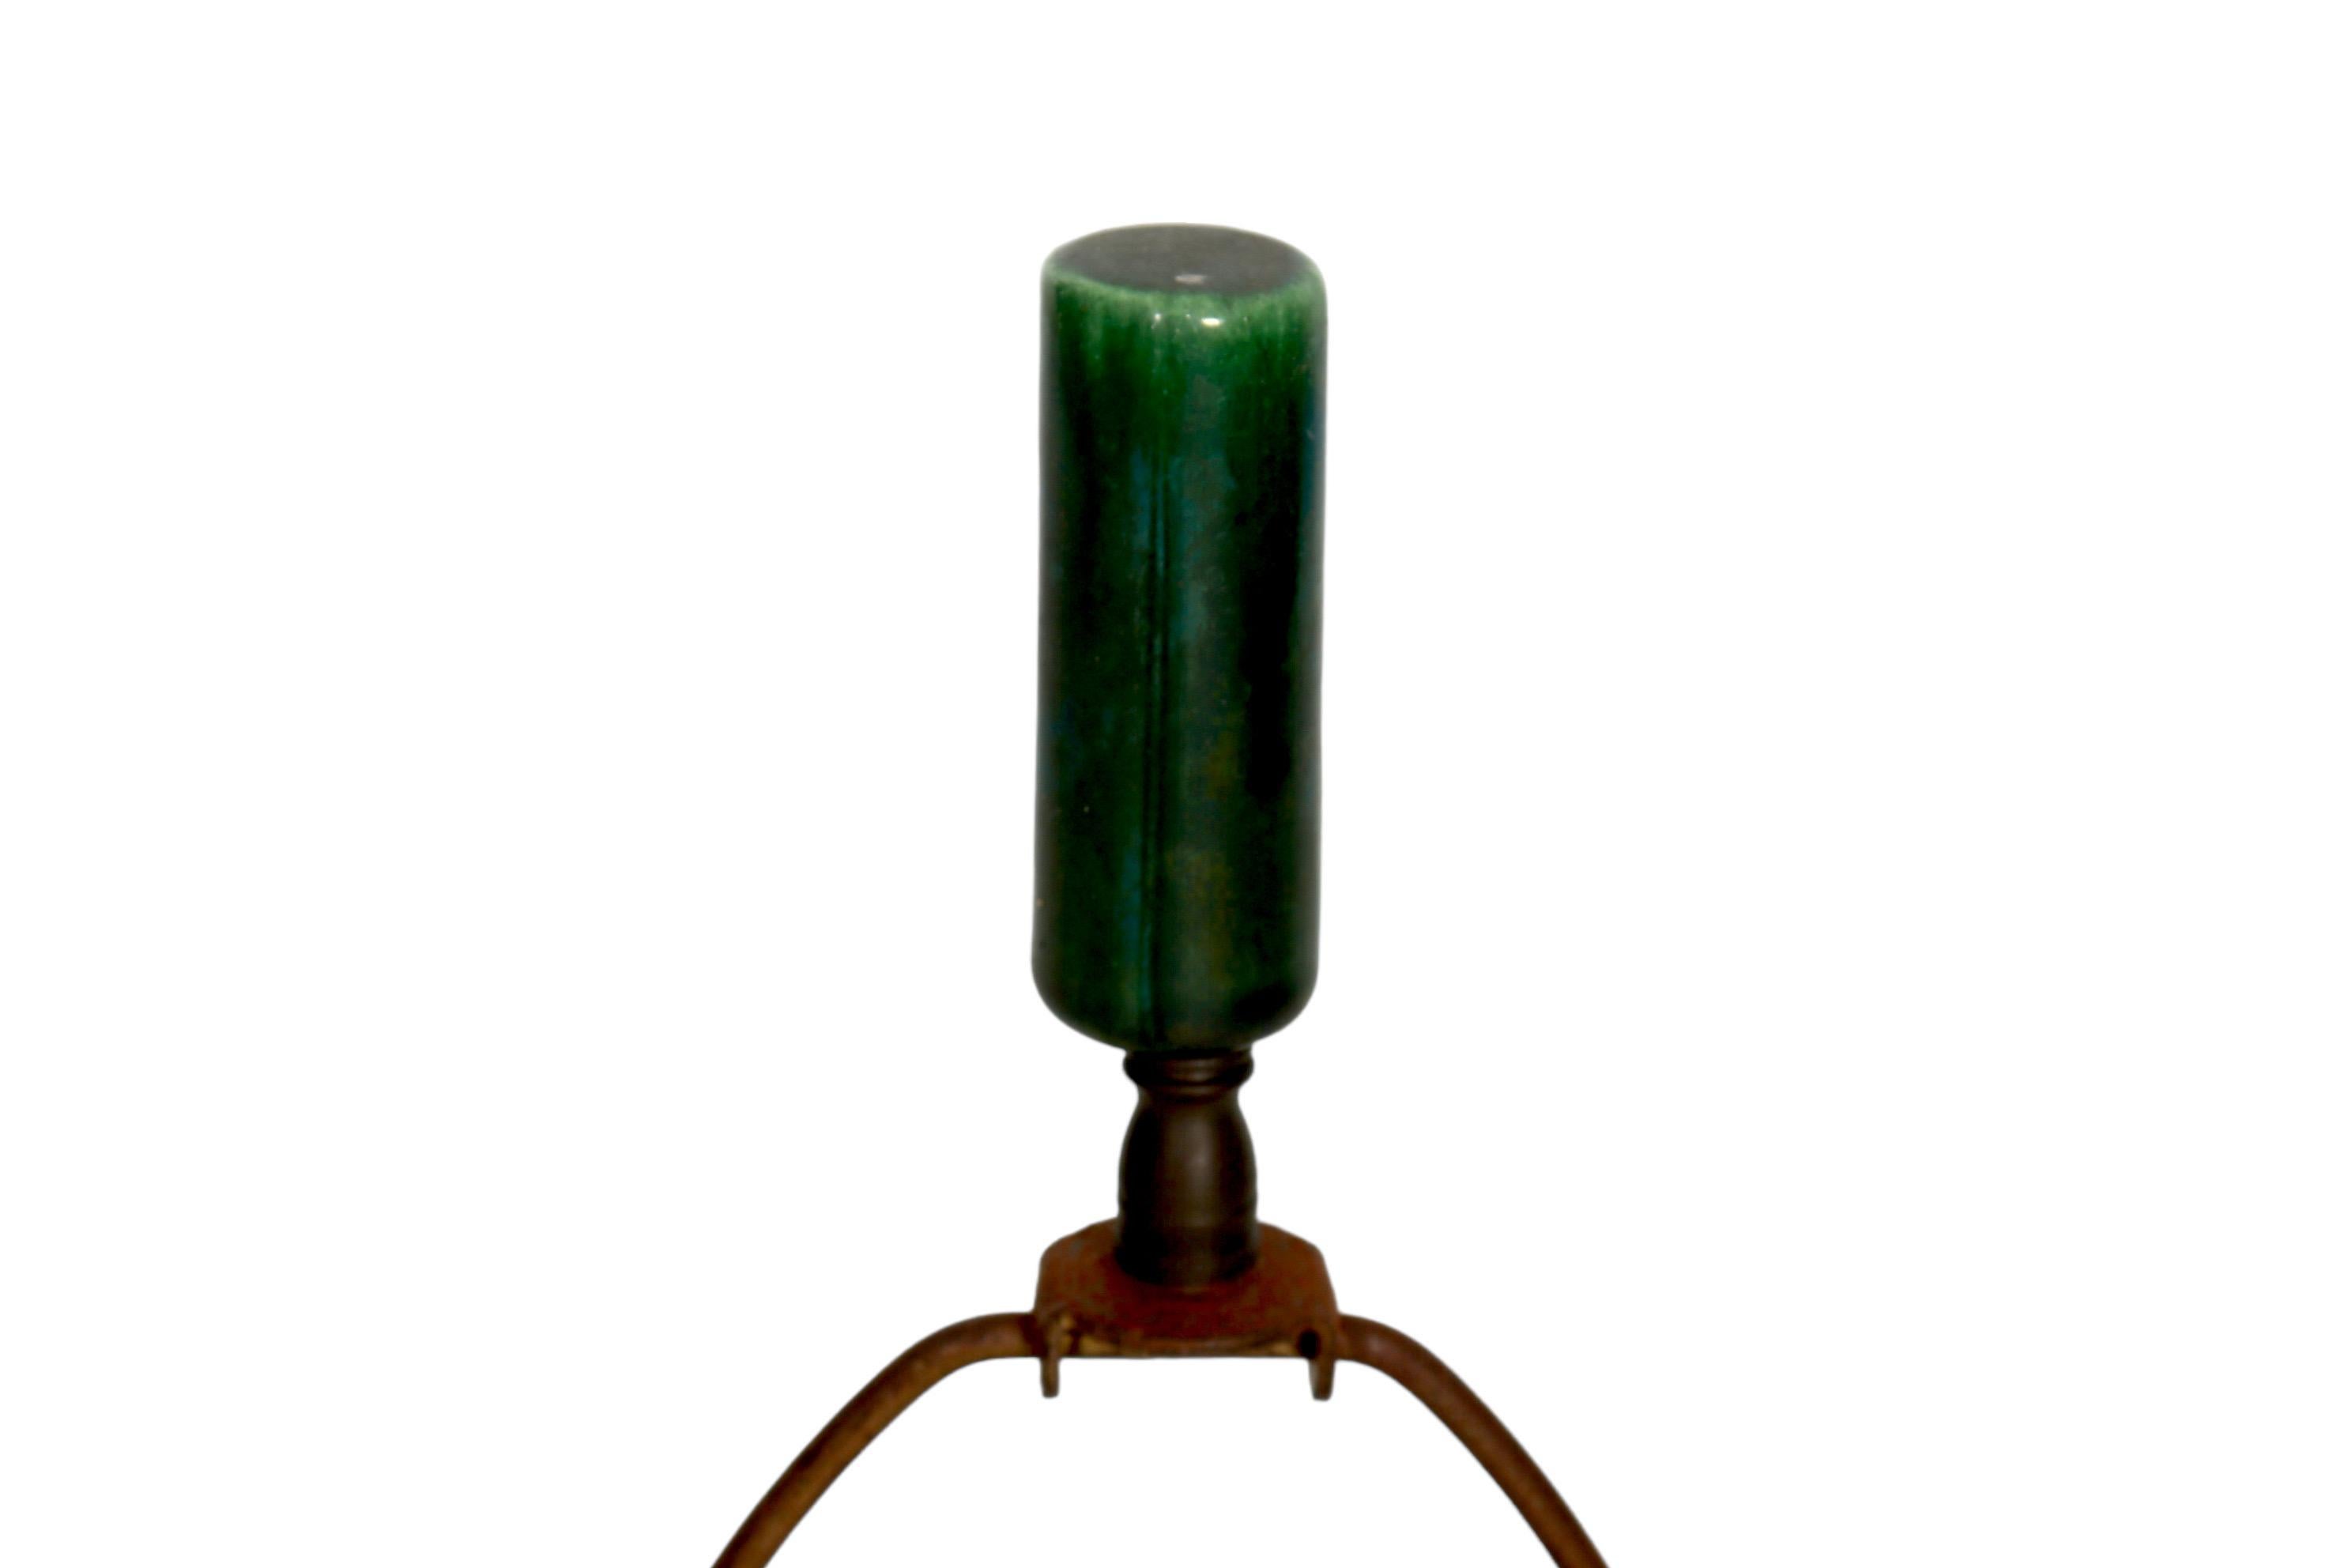 Lampe de table en céramique de style atomique, vert émeraude. En forme de cactus, avec un vase cannelé et une bande décorative autour de la base pressée pour donner l'aspect de bijoux taillés en émeraude. Elle repose sur trois pieds en fer forgé